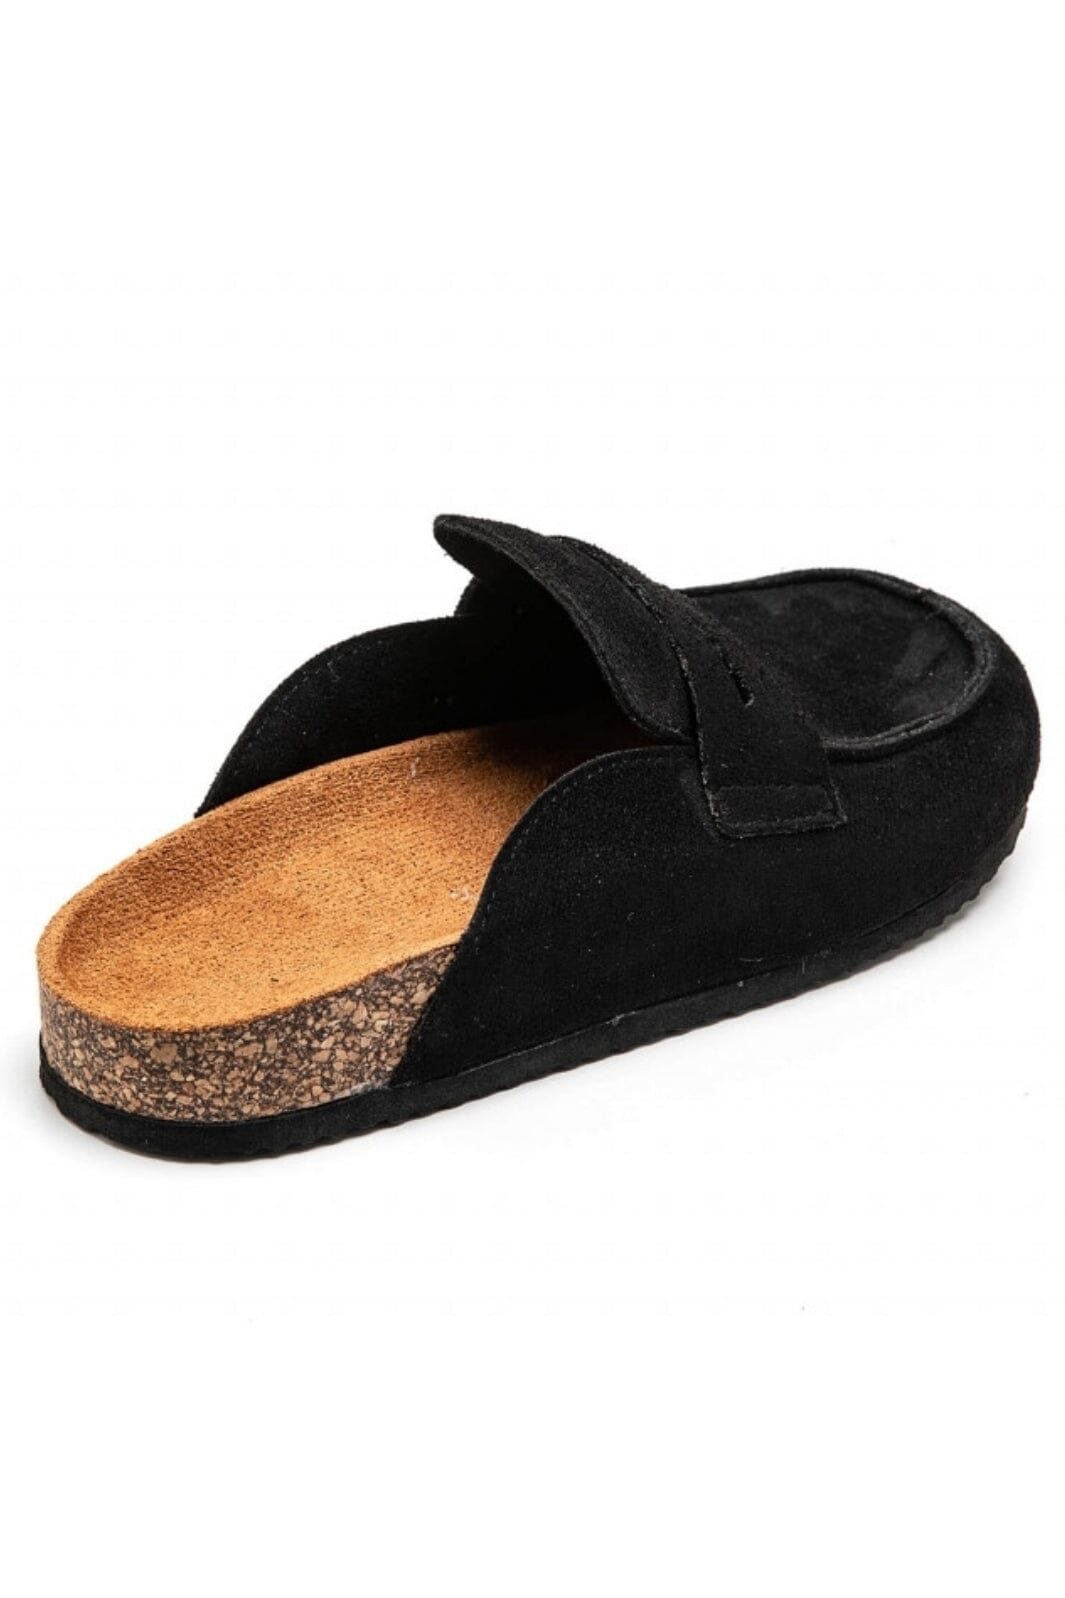 Marta Du Chateau - Ladies Shoes 7218 - Black Loafers 